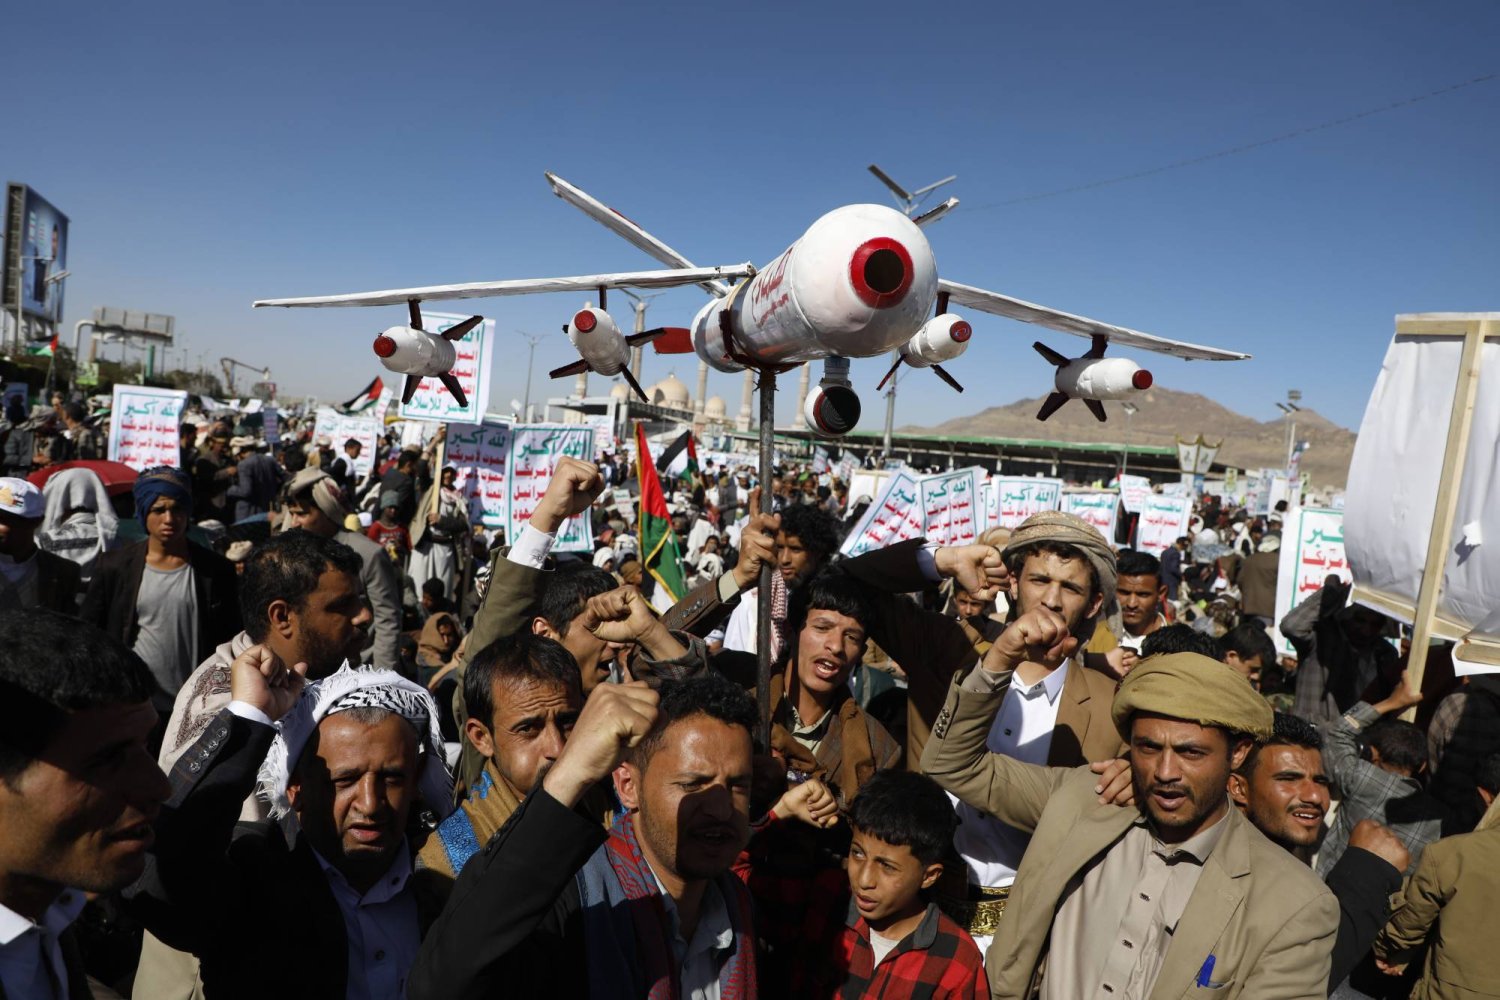 حشدت الجماعة الحوثية الآلاف من أتباعها للتظاهر في صنعاء استجابة لدعوة زعميها (أ.ب)